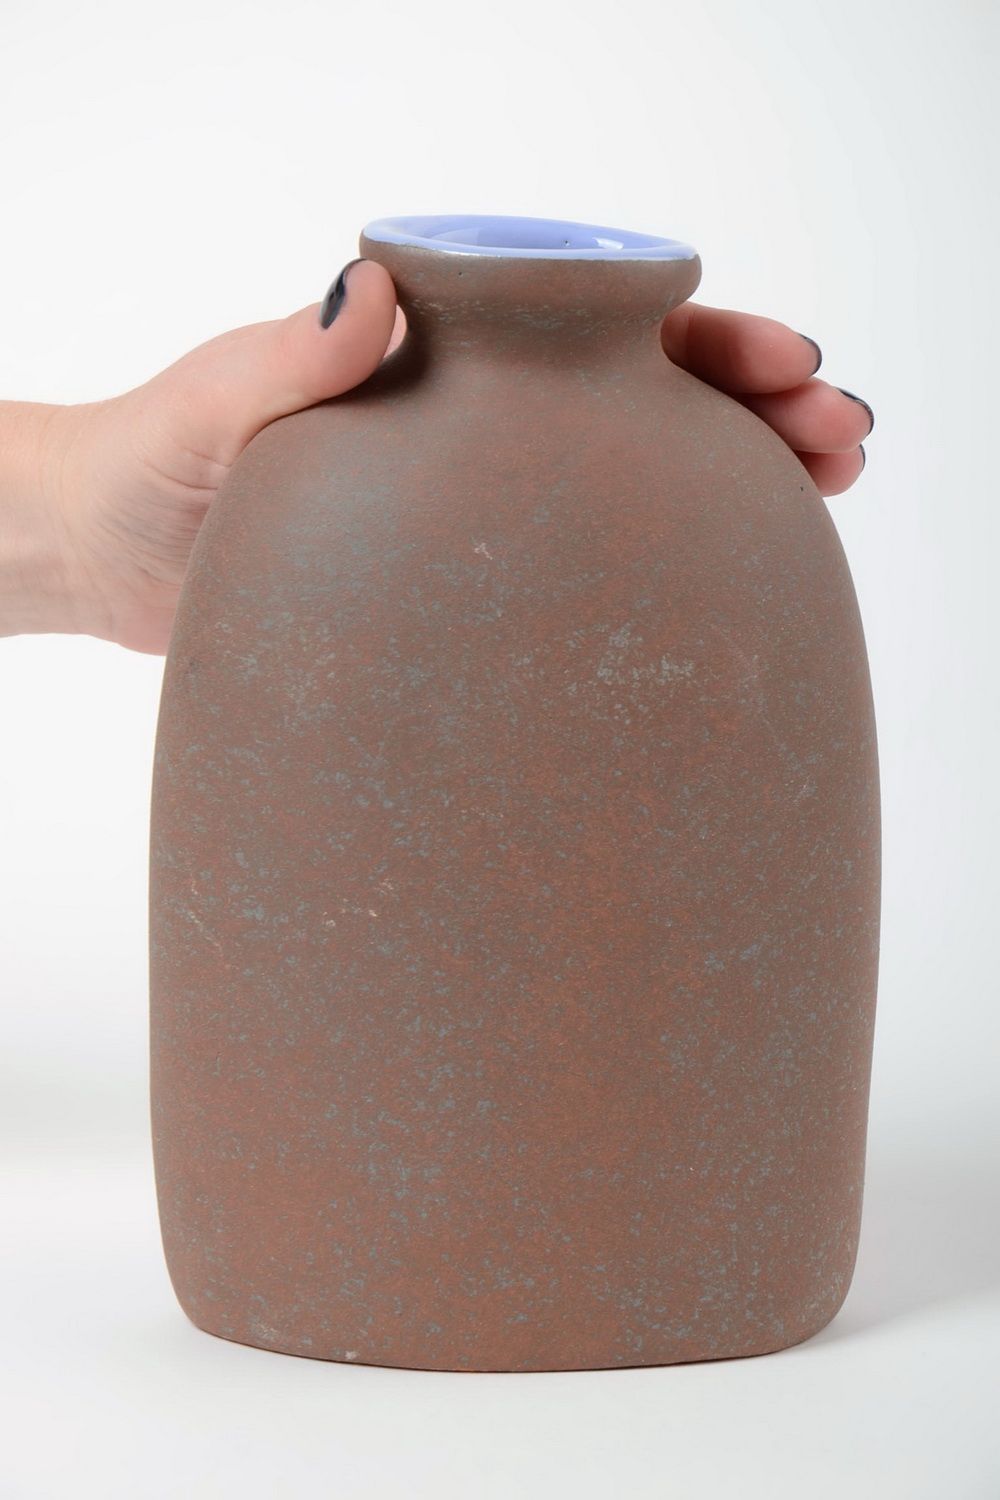 Полуфарфоровая ваза для цветов расписанная пигментами хэнд мэйд на 1 литр фото 5